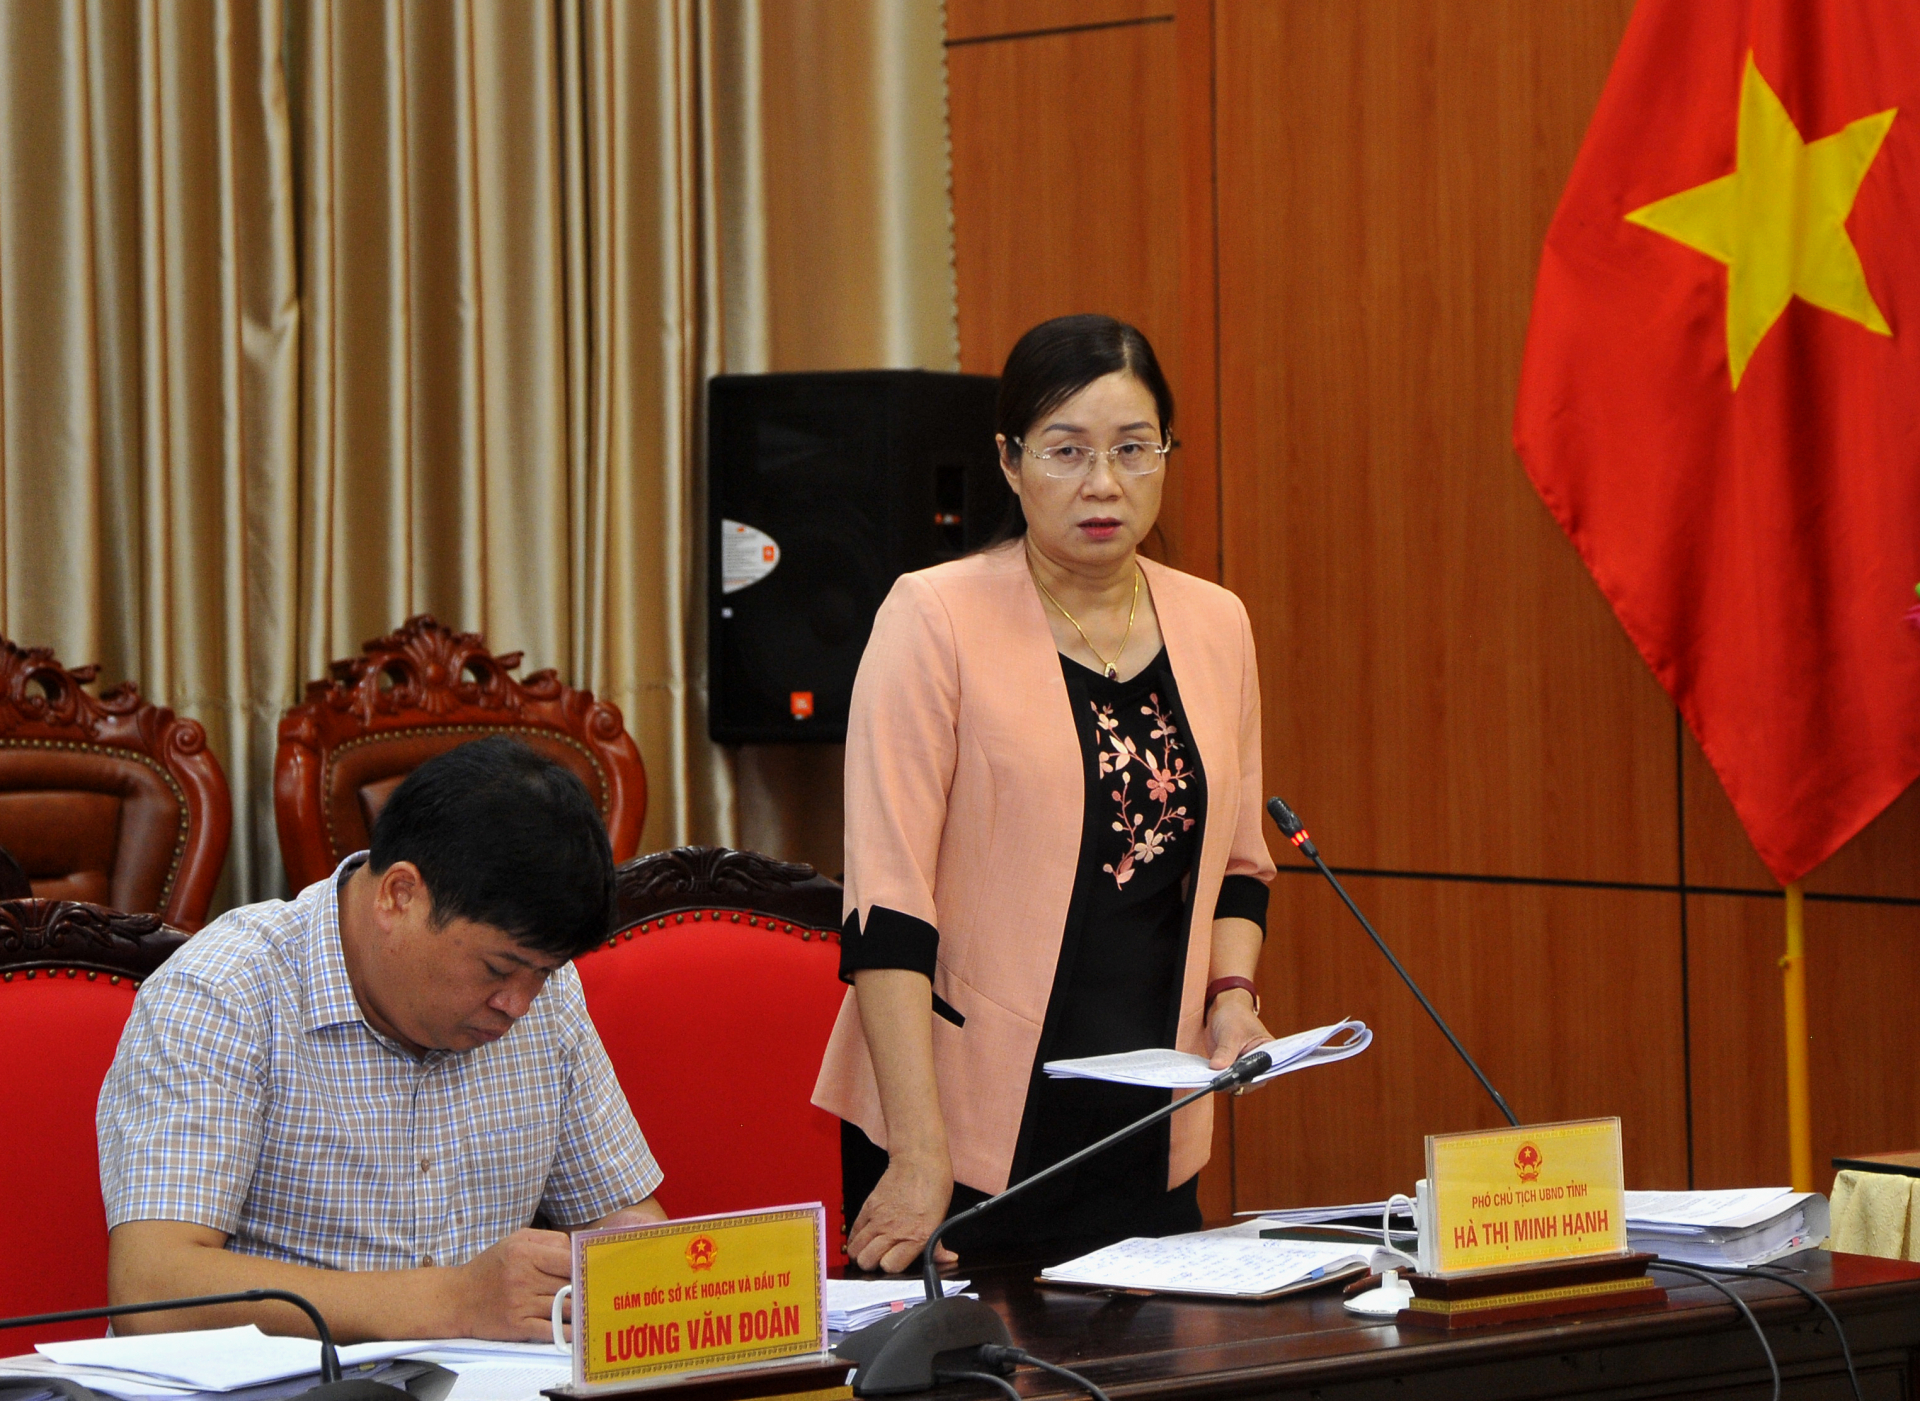 Phó Chủ tịch UBND tỉnh Hà Thị Minh Hạnh đề nghị các sở, ngành, địa phương quyết tâm, quyết liệt triển khai các nhiệm vụ để hoàn thành chỉ tiêu kế hoạch trong các tháng cuối năm.